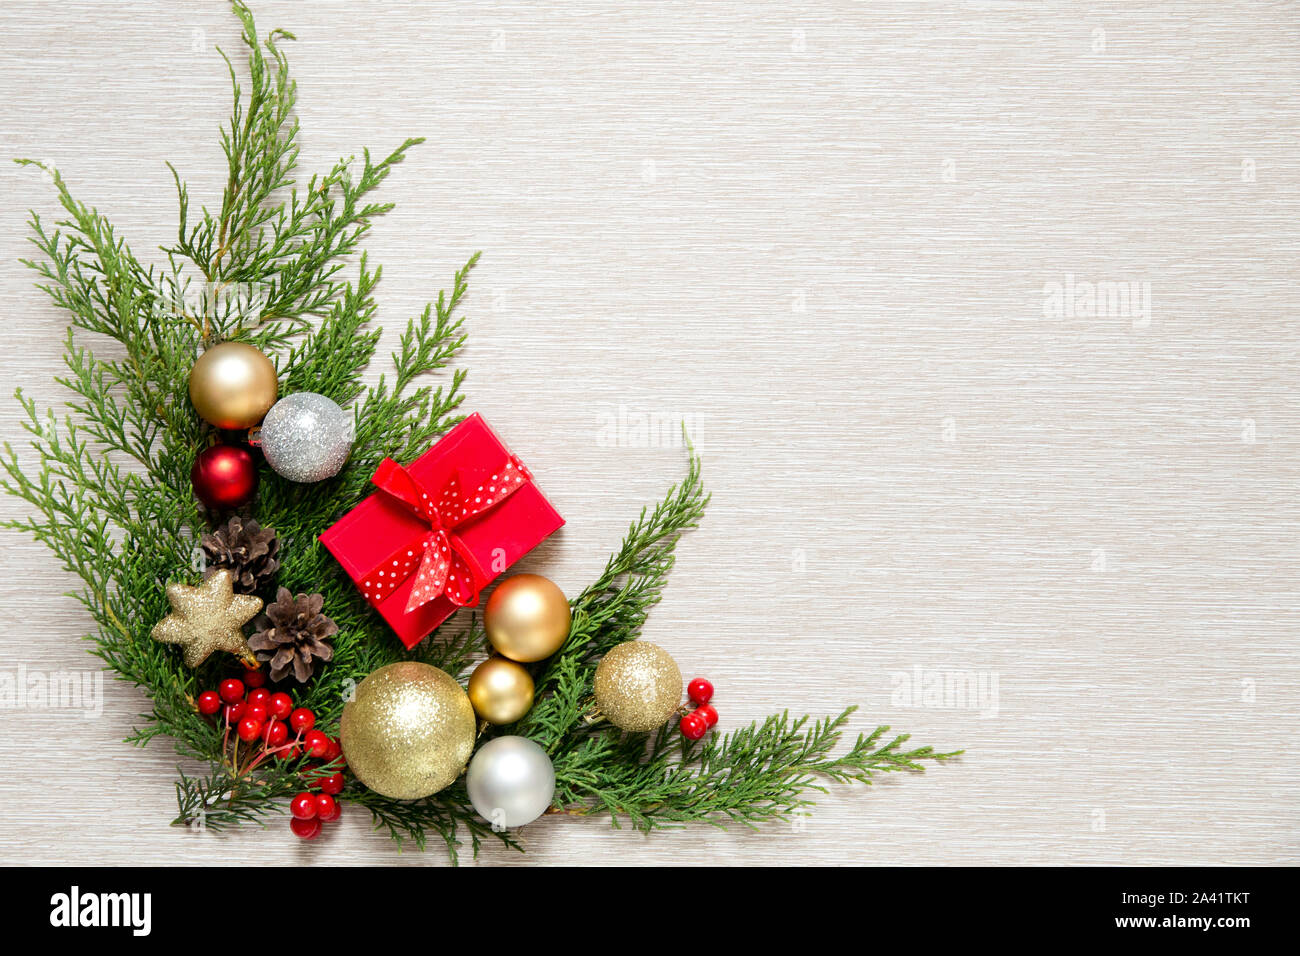 Grüne Zweige und Weihnachtskugeln. Weihnachten Dekor auf einem hellen Hintergrund. New Year's Geschenk in einer kleinen roten Box. Stockfoto